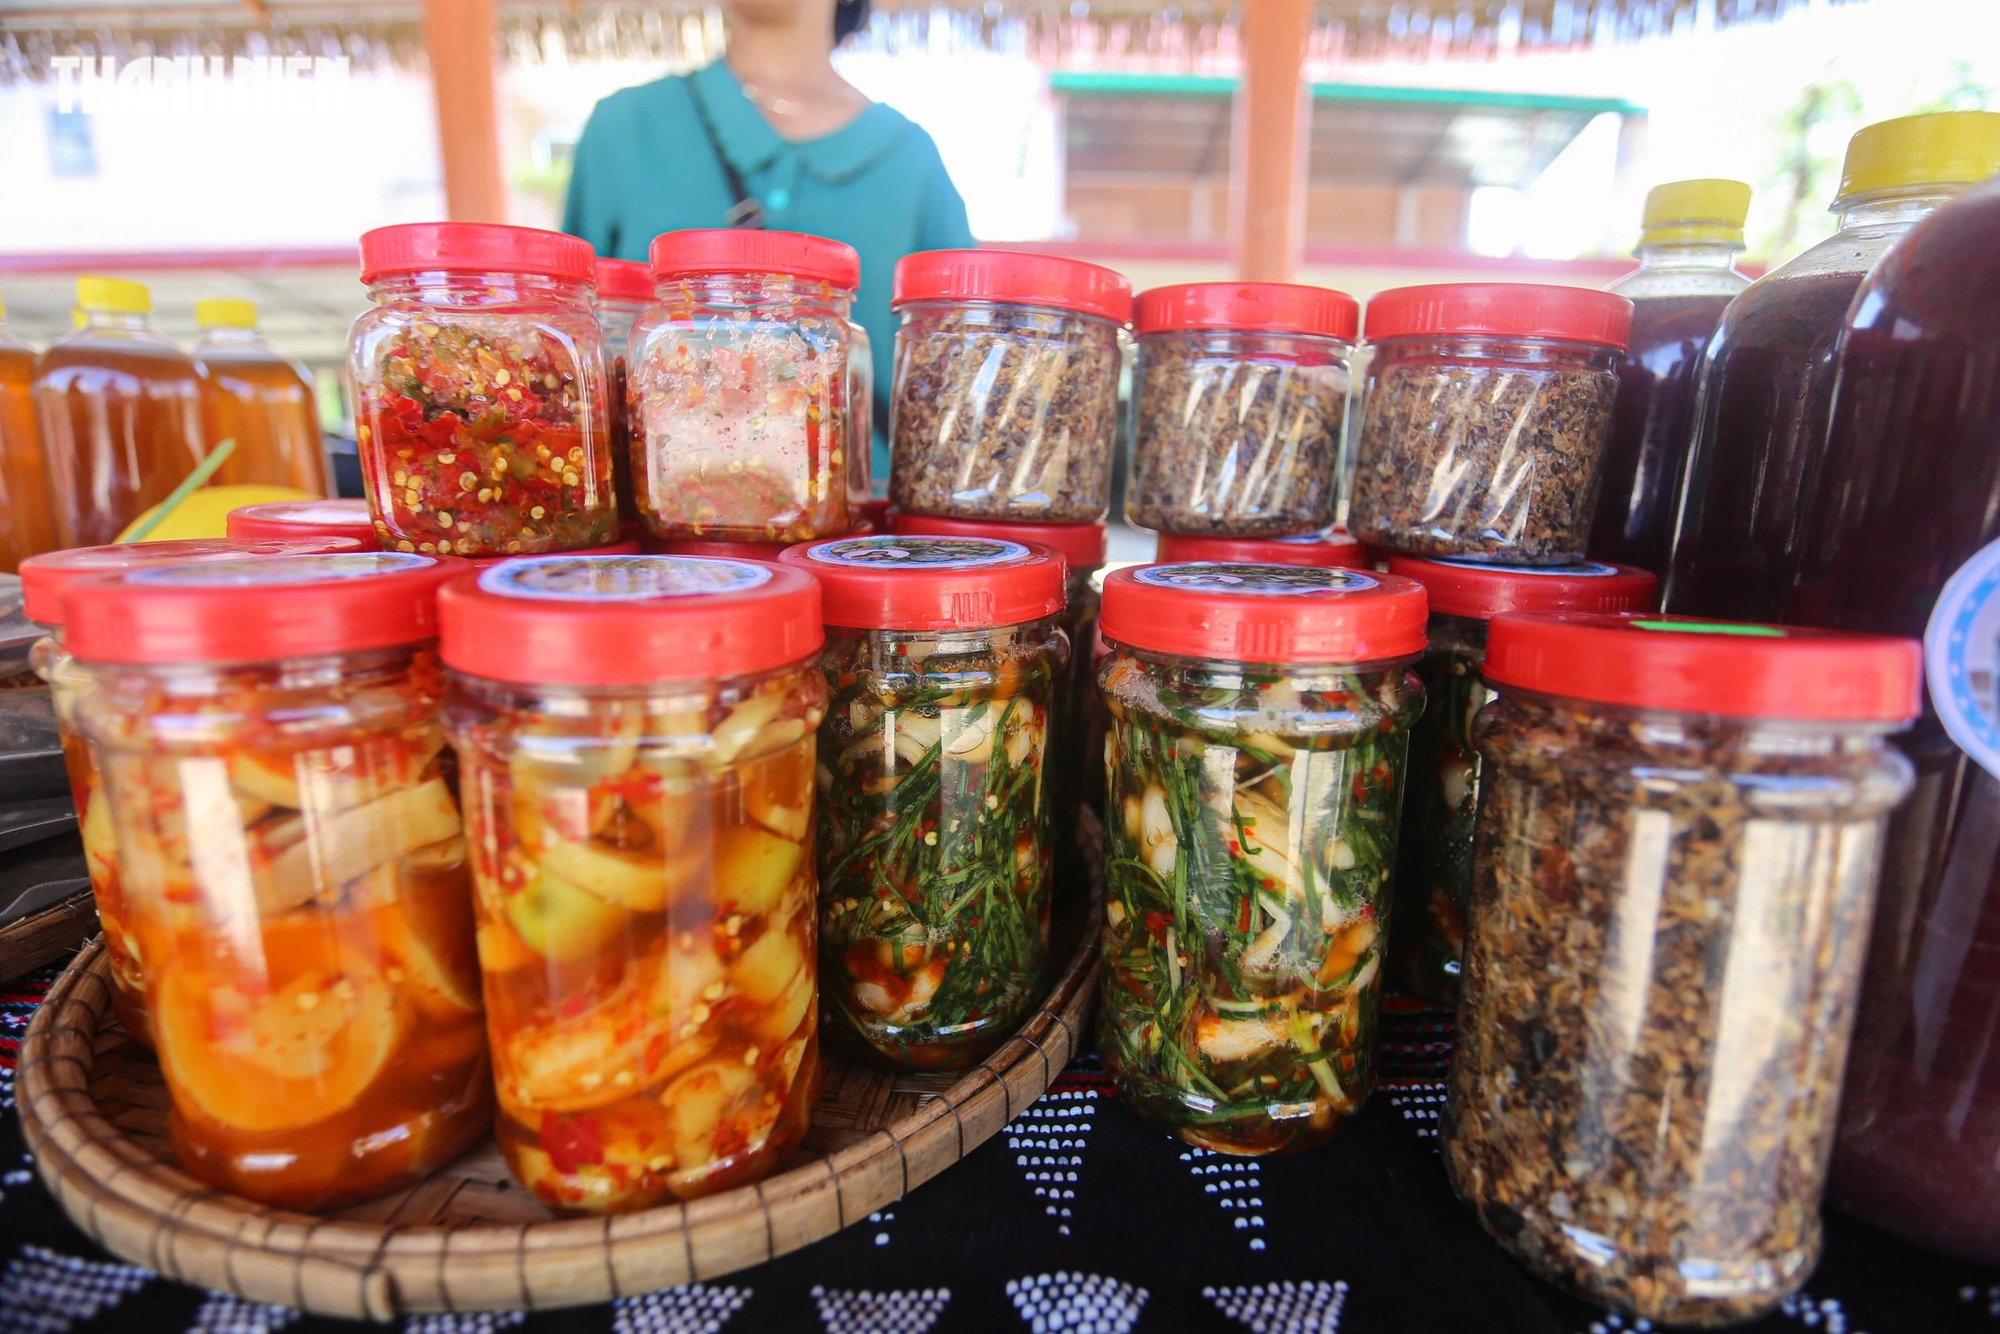 Hội thi cũng bày bán nhiều sản phẩm khô và đóng hộp của đồng bào các dân tộc thiểu số Thừa Thiên - Huế